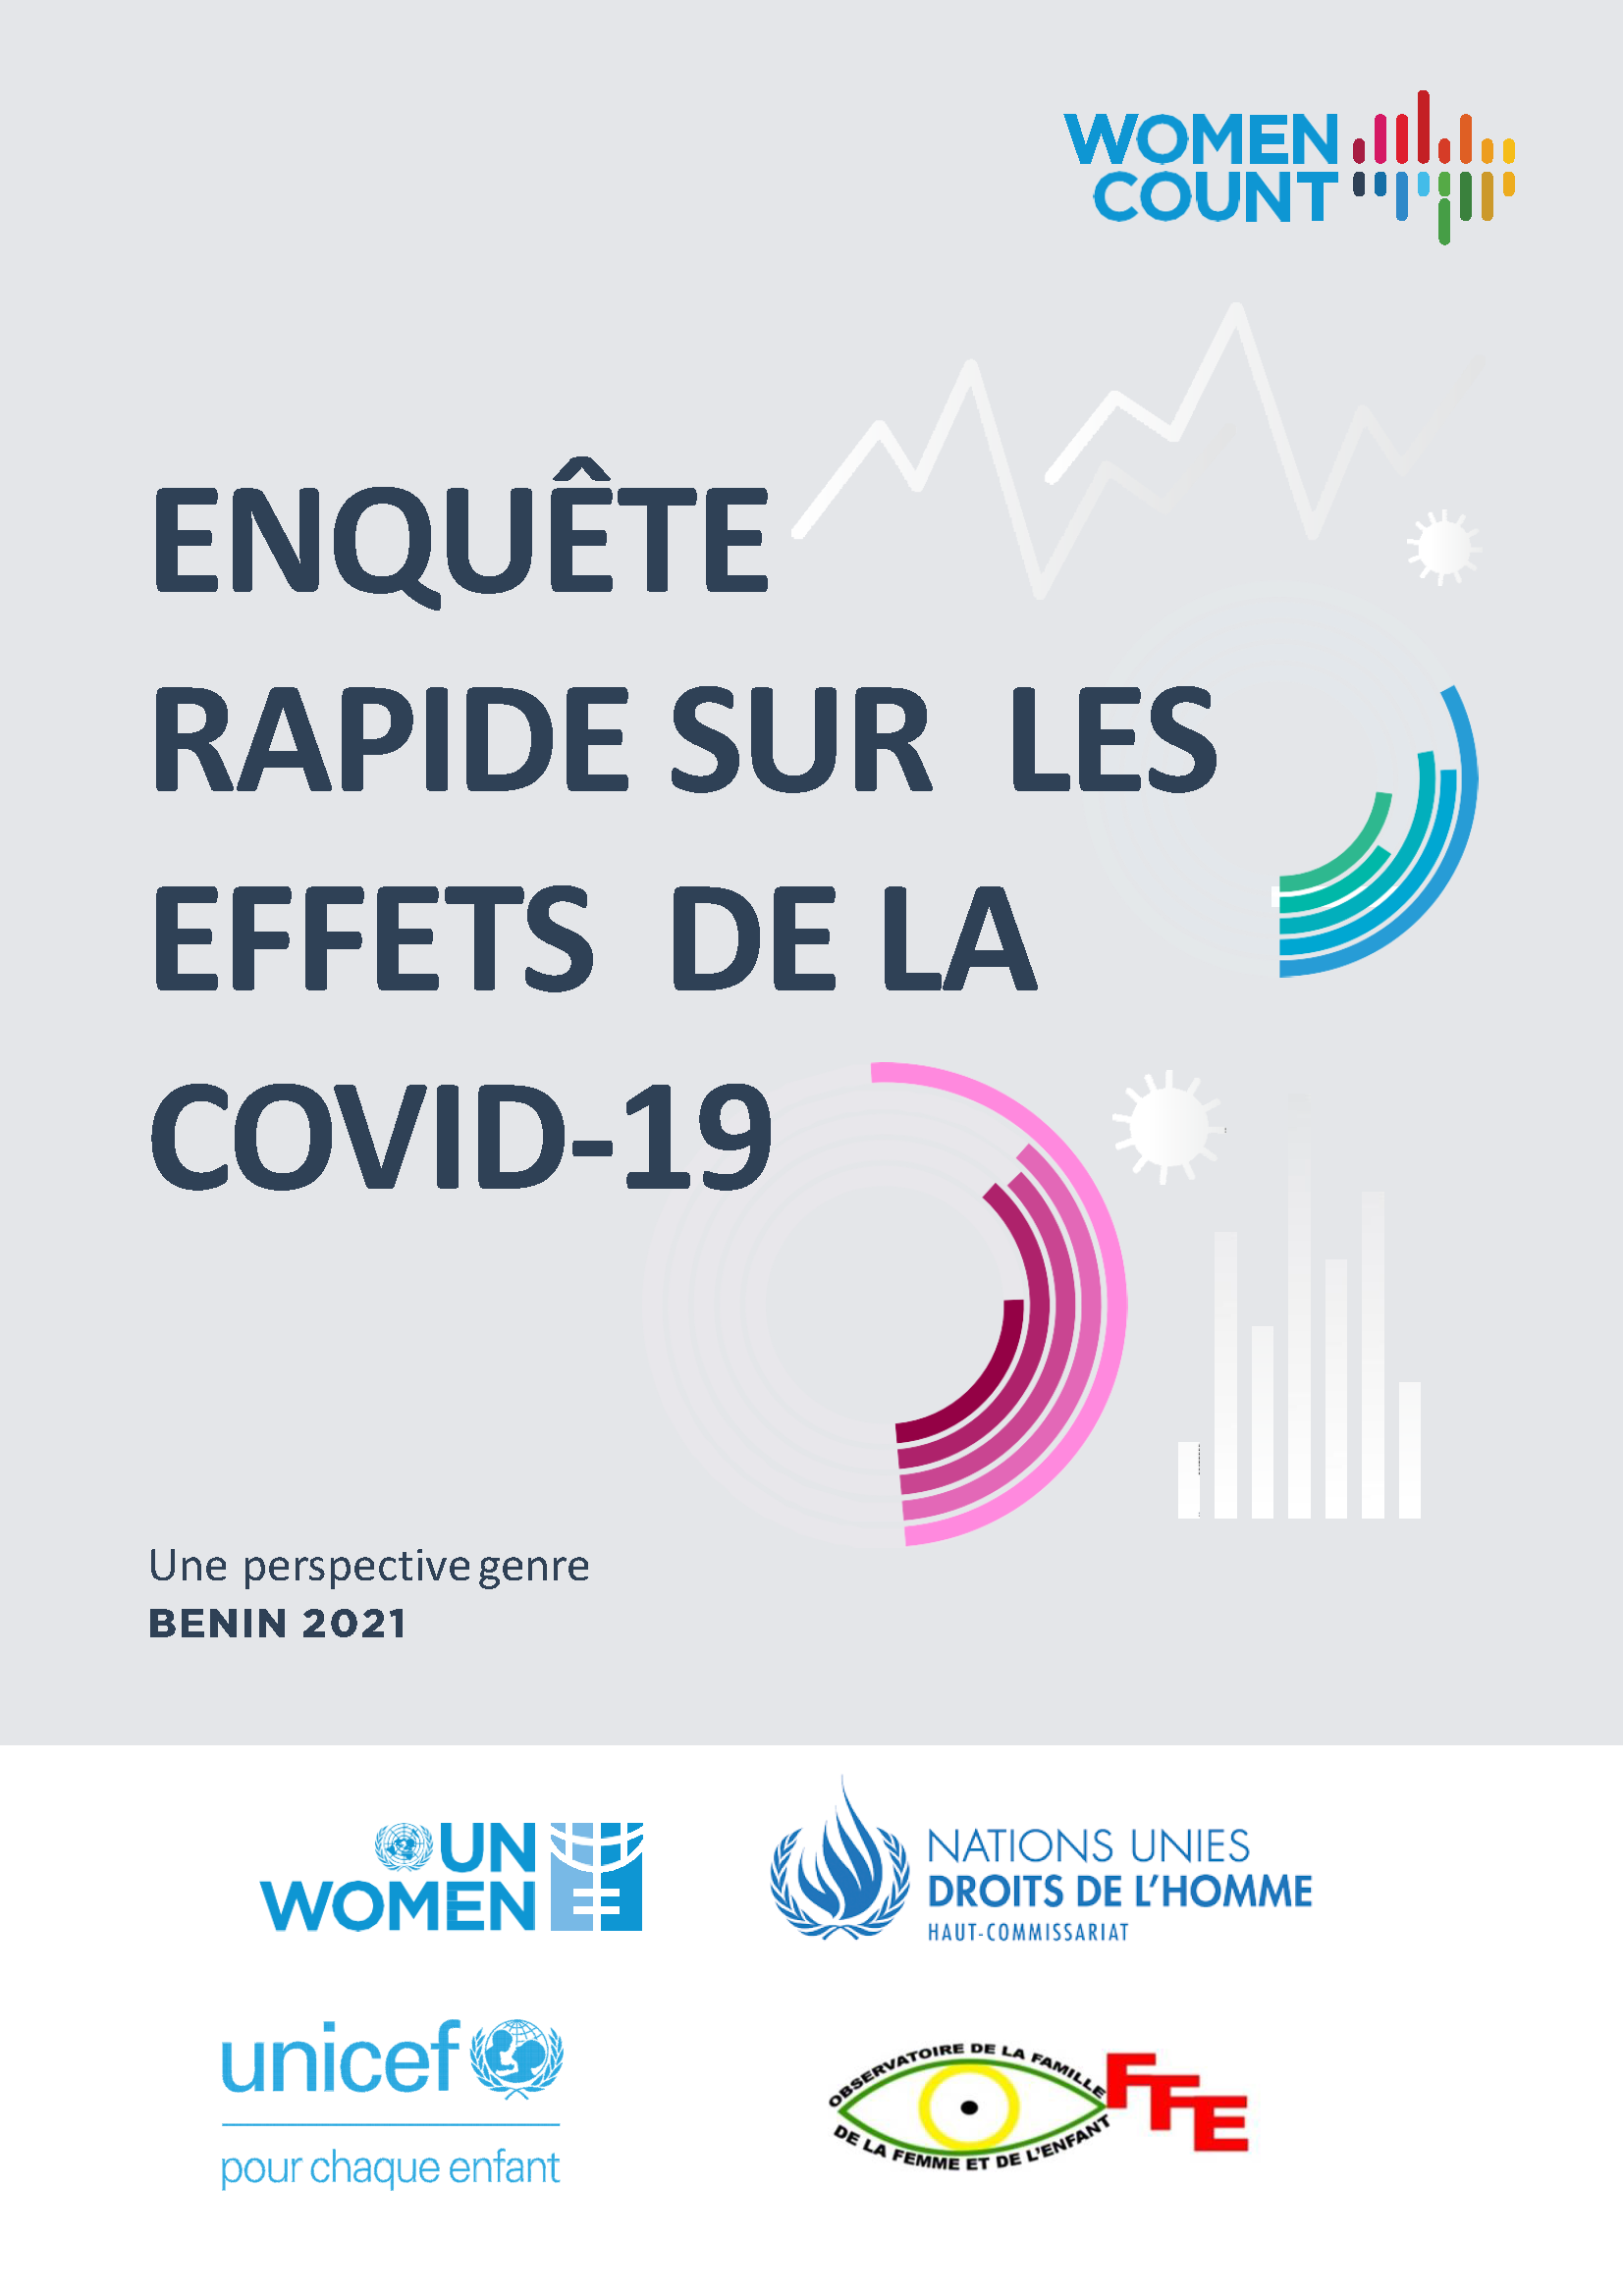 rapid gender assessment on COVID-19 in Benin